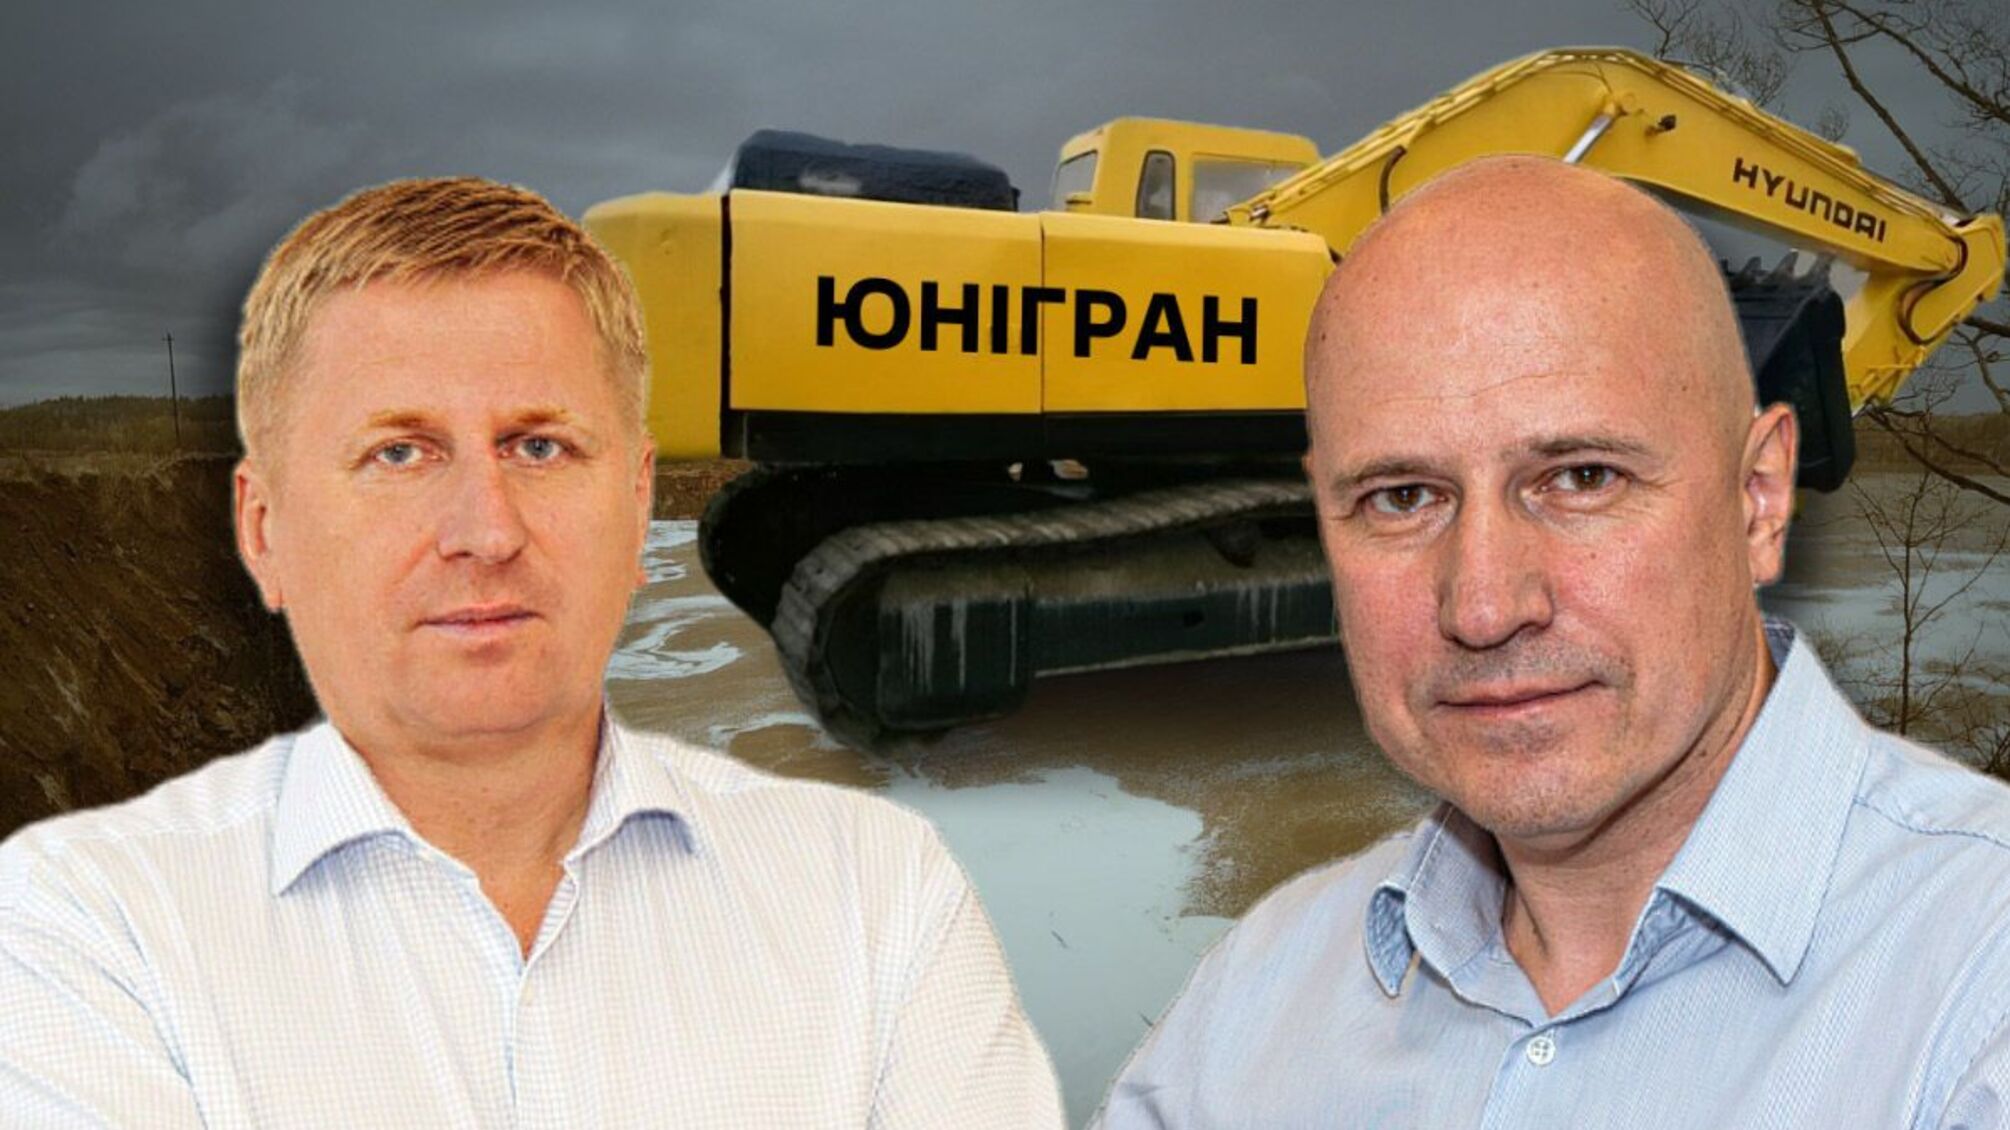 На Житомирщине затоплен карьер, контролируемый пророссийской фирмой, – возможна диверсия?